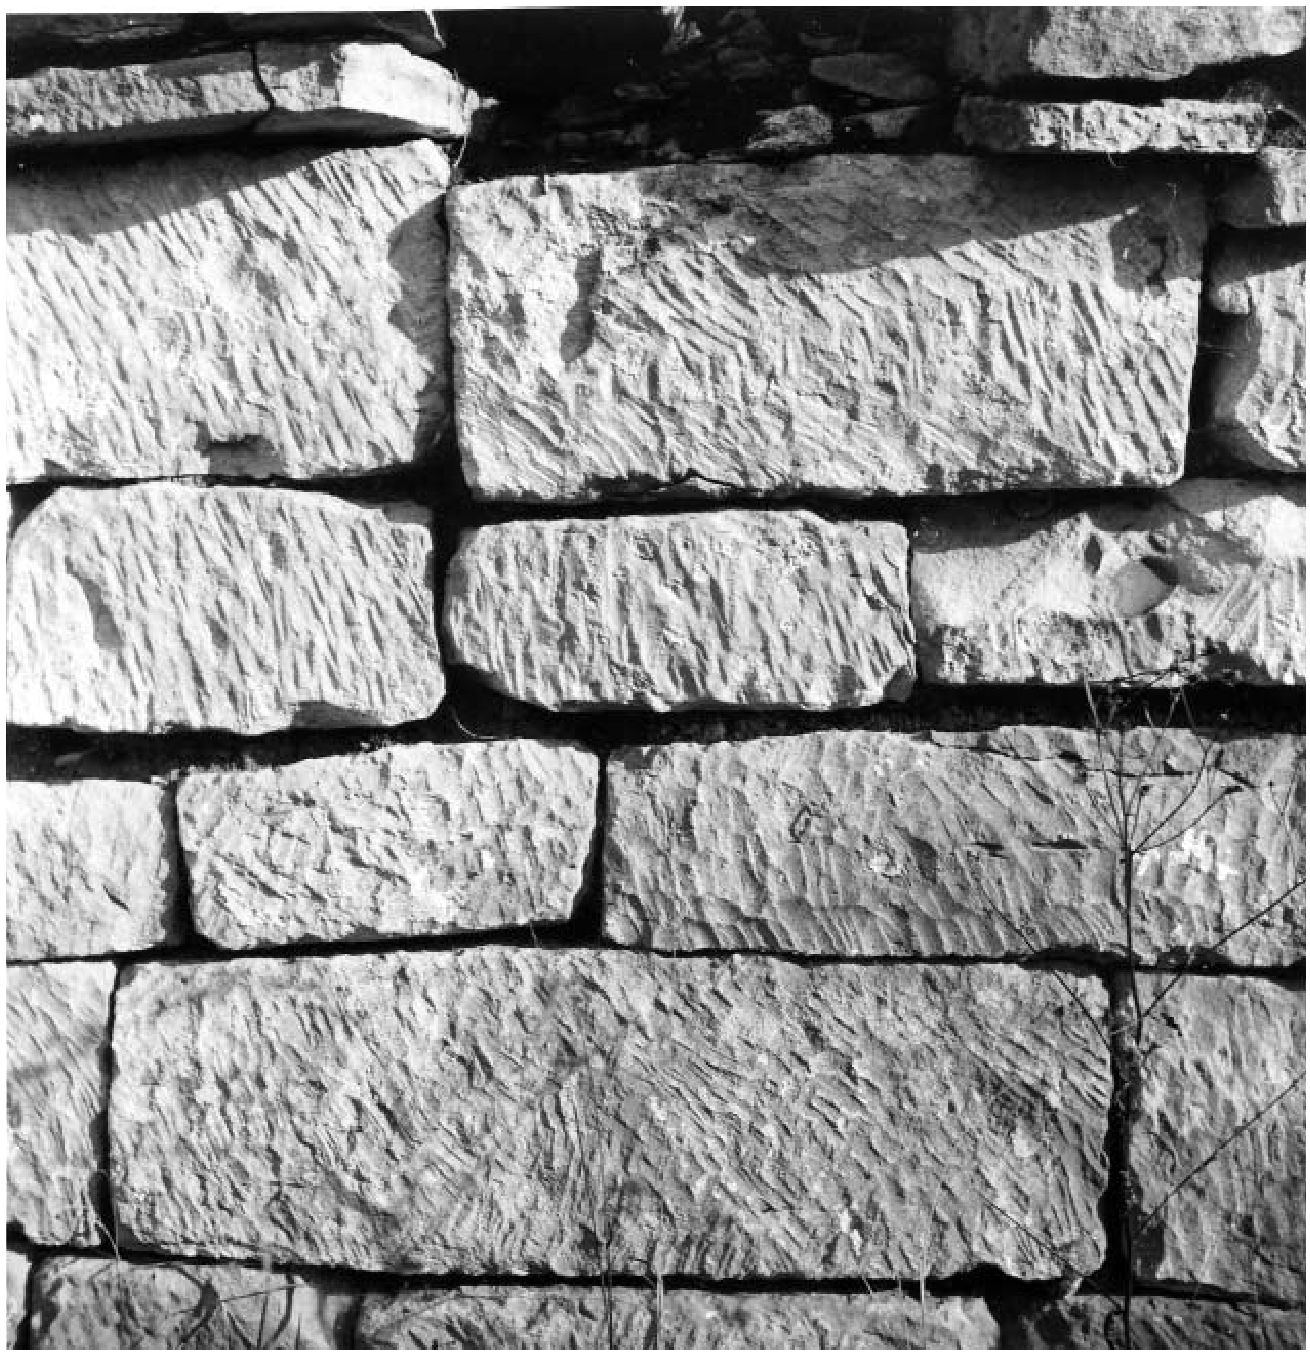 Илл. 23. Хумара. Тип кладки крепостных стен. Фото В.С. Флёрова, 1986 г